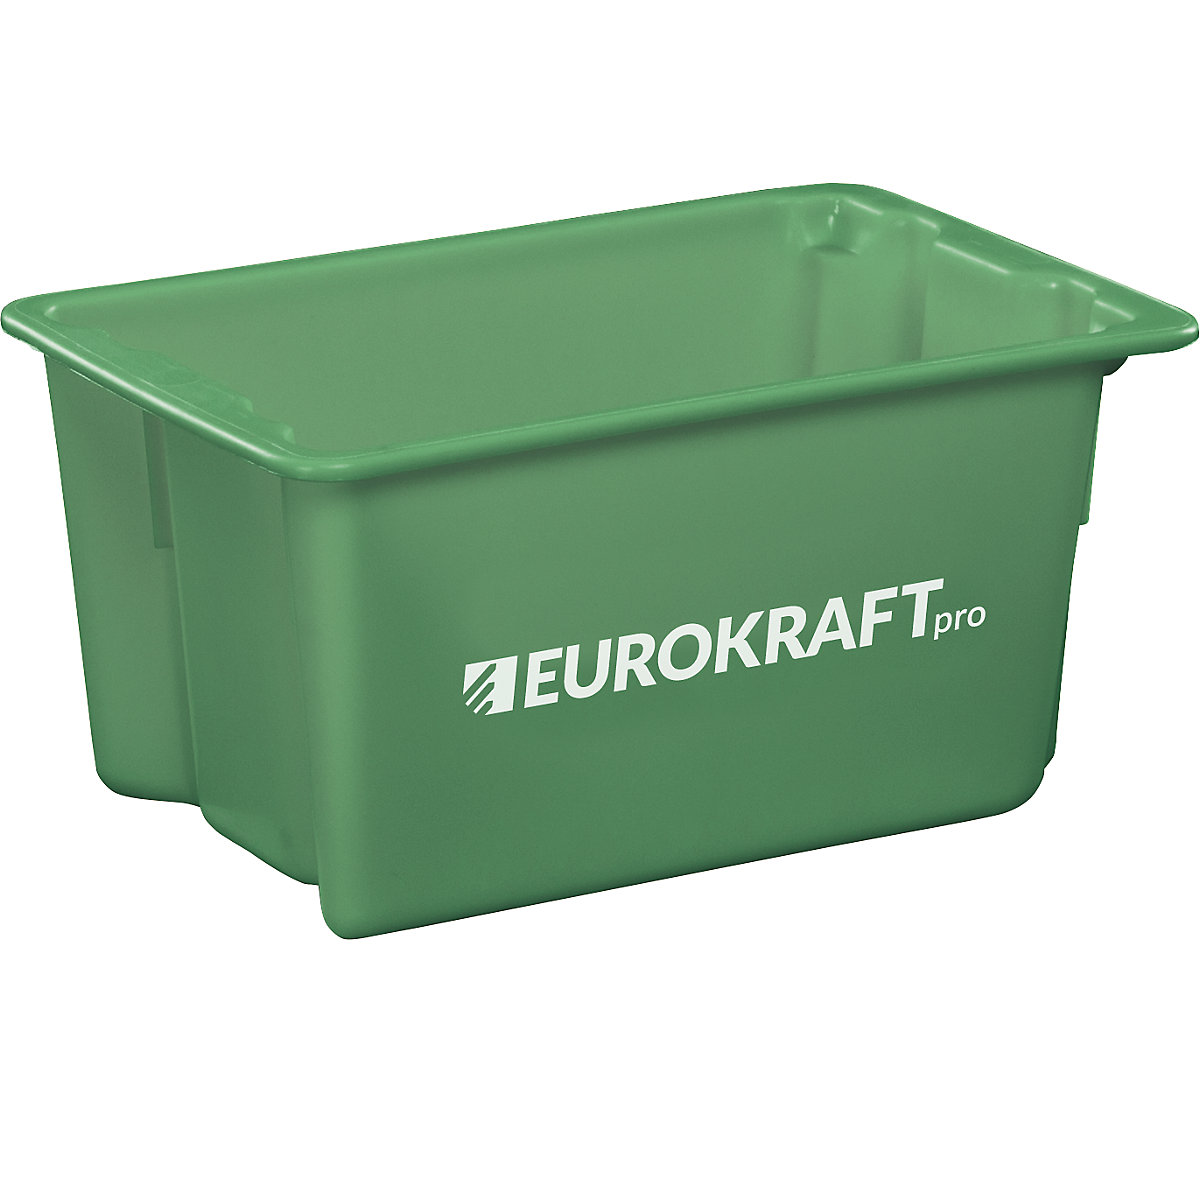 Elforgatva egymásra rakható tárolók élelmiszerekhez alkalmas polipropilénből – eurokraft pro, térfogat 50 l, cs. e. 3 db, zárt falak és alj, zöld-6